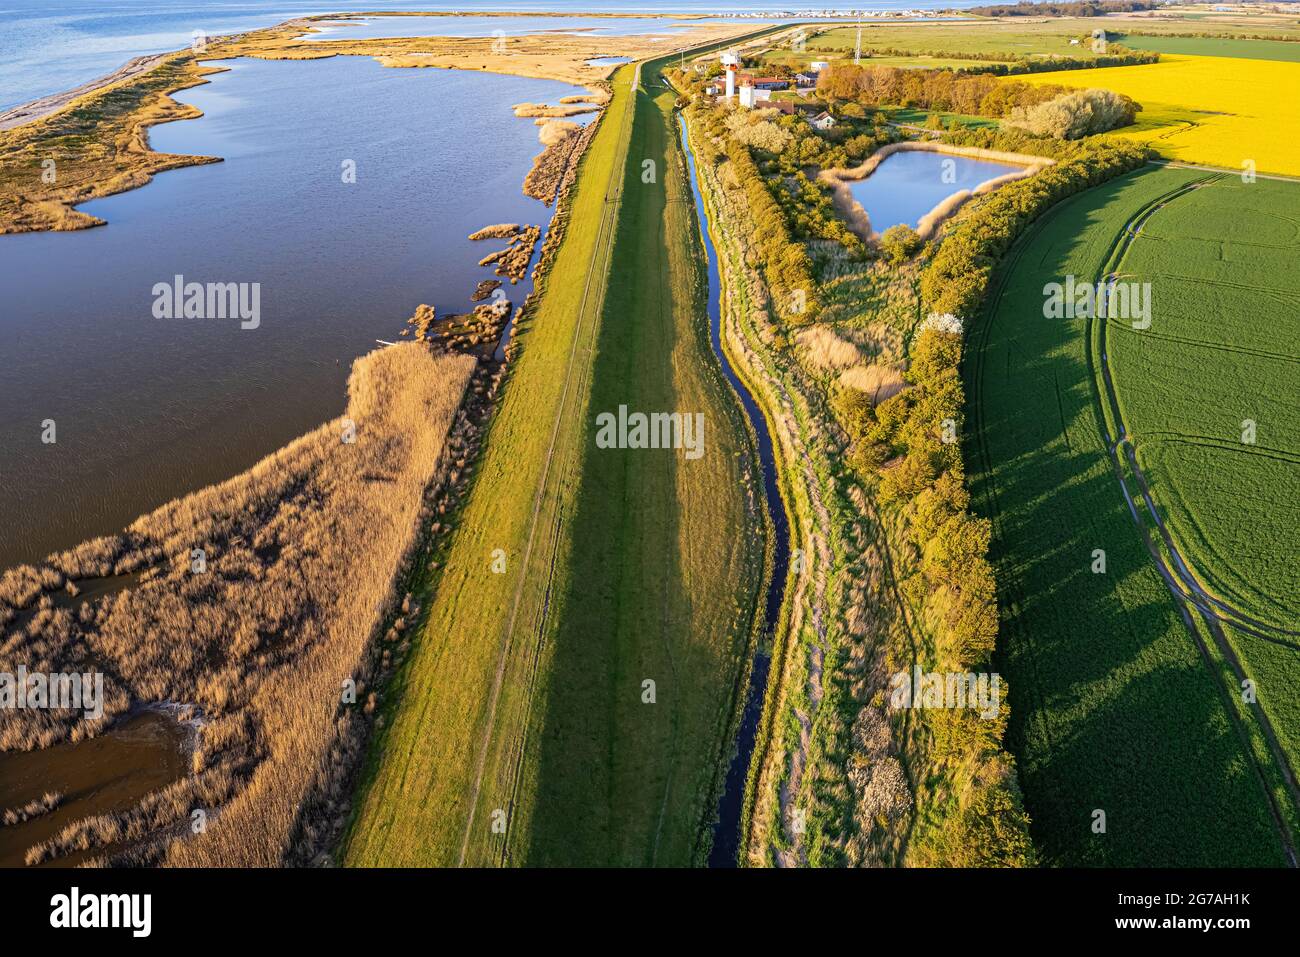 Image de drone, impression côtière, Westermarkelsdorf, île de Fehmarn Banque D'Images